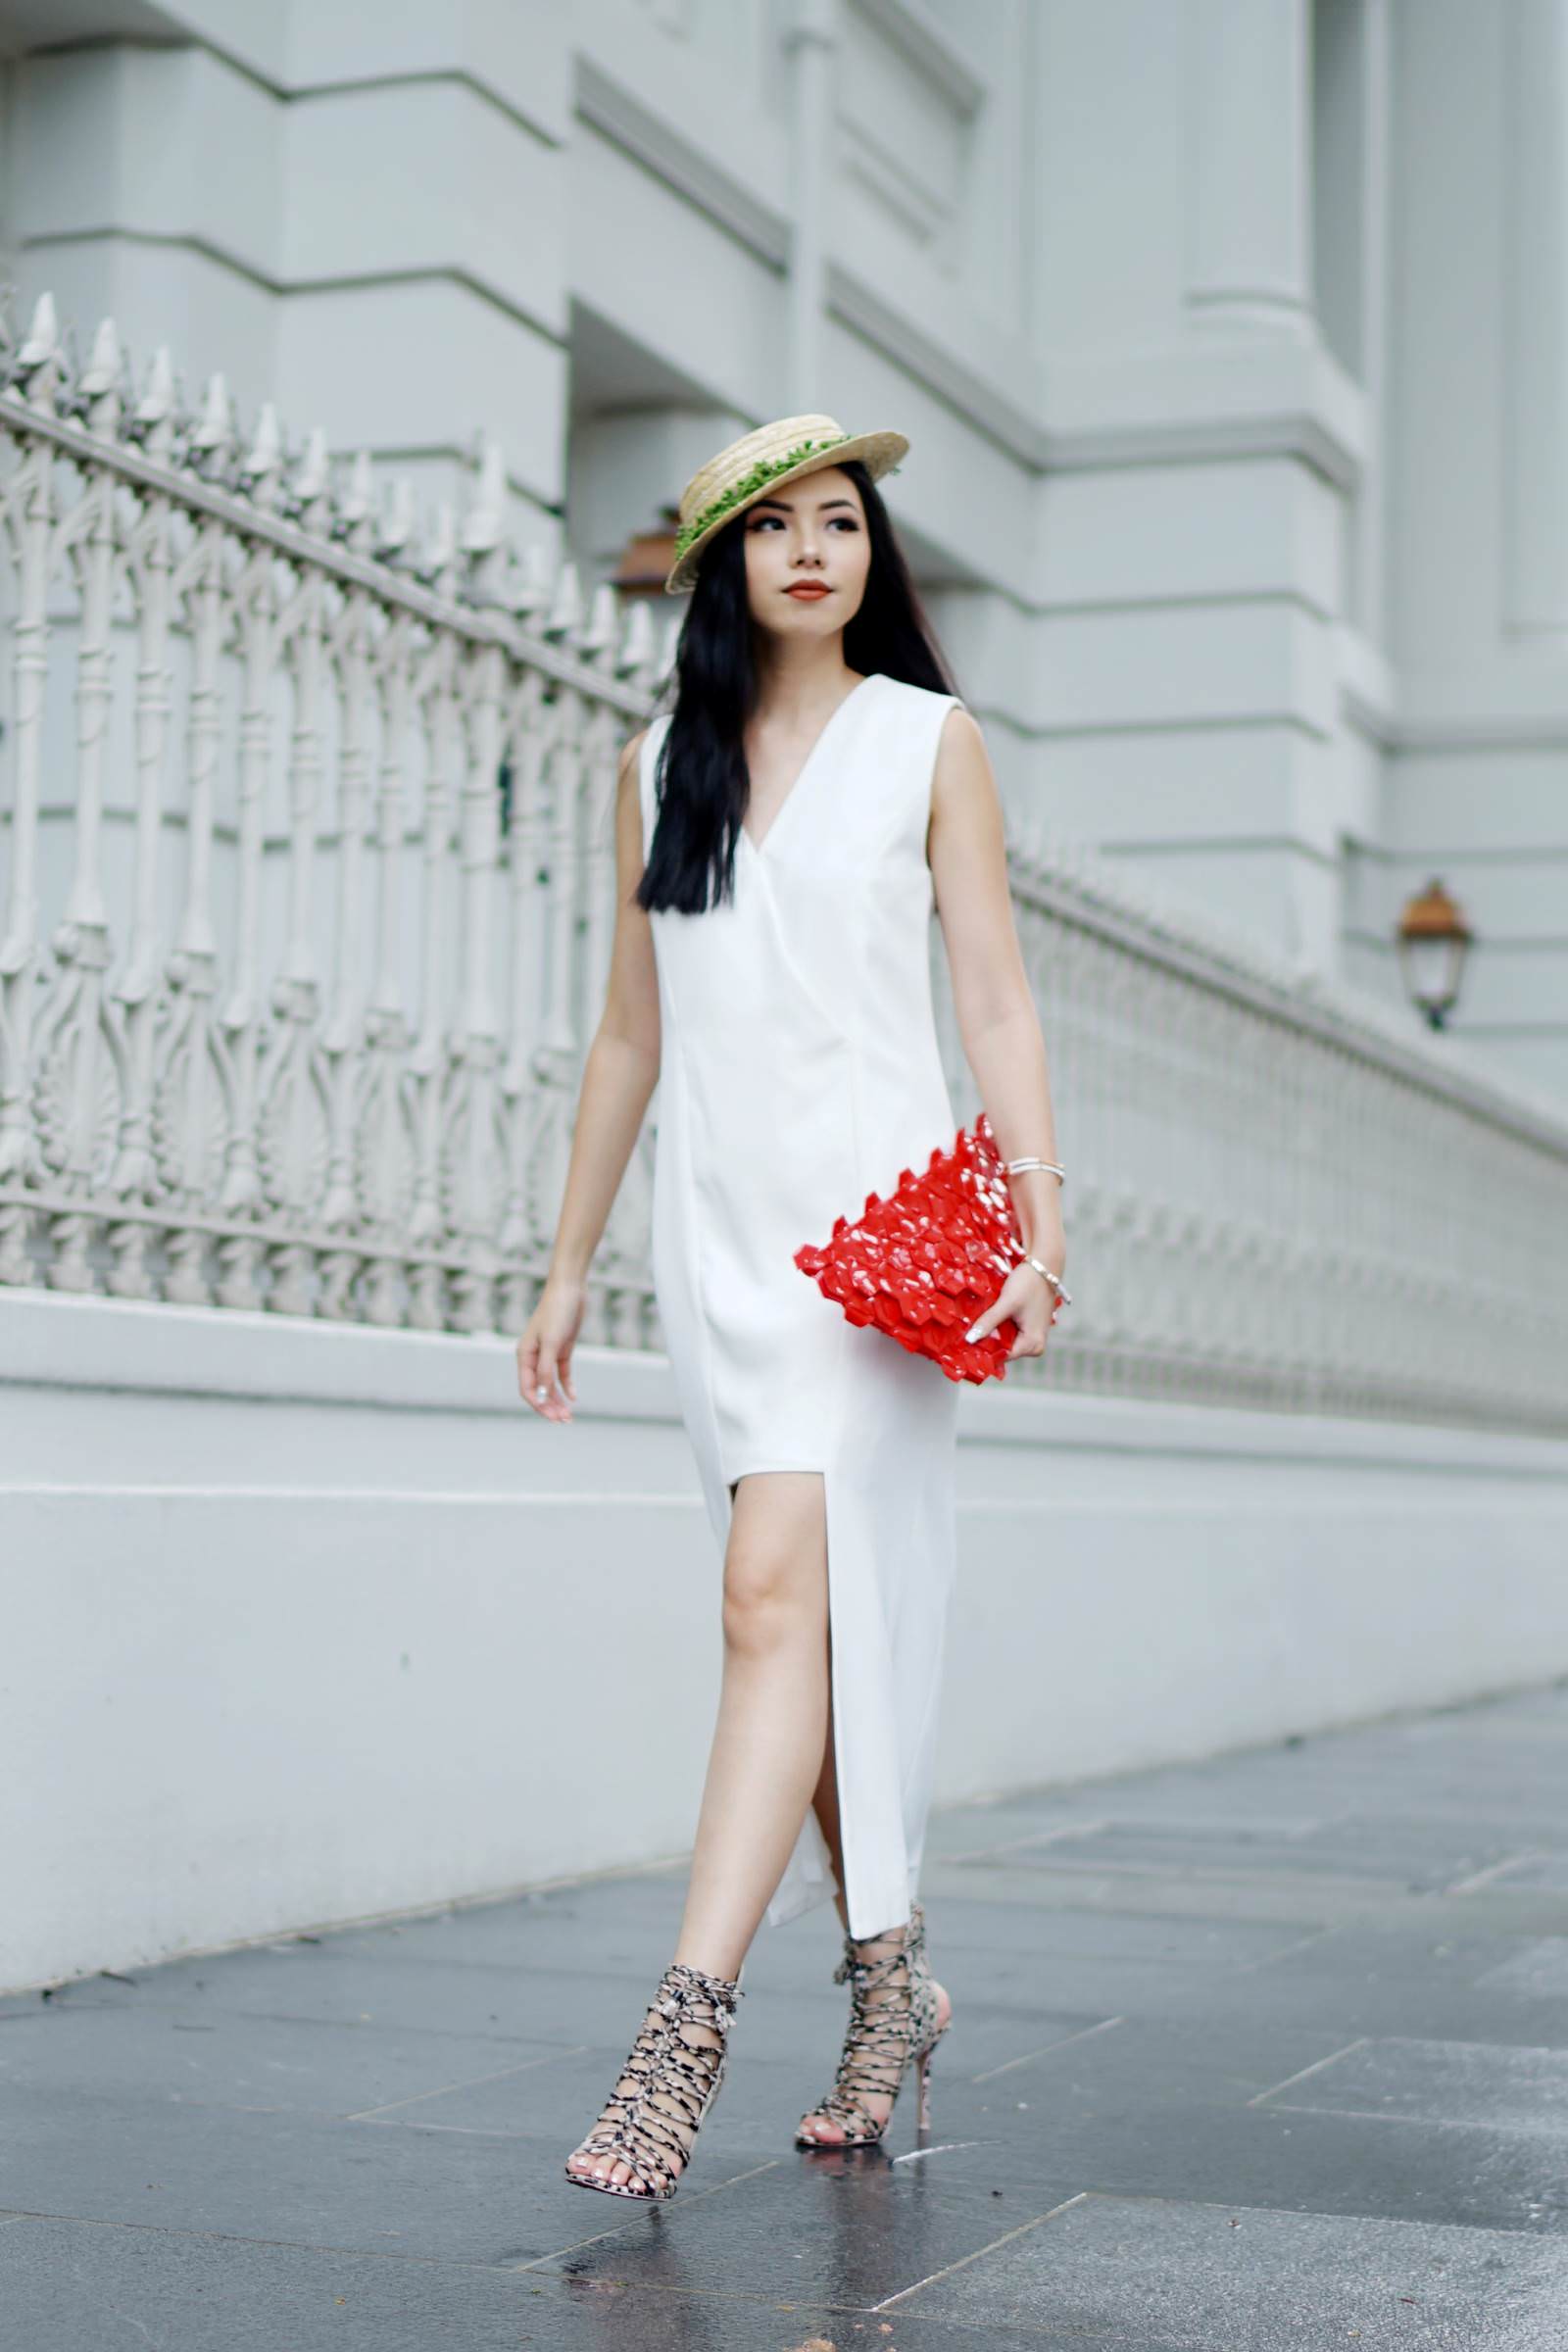 all white semi formal attire